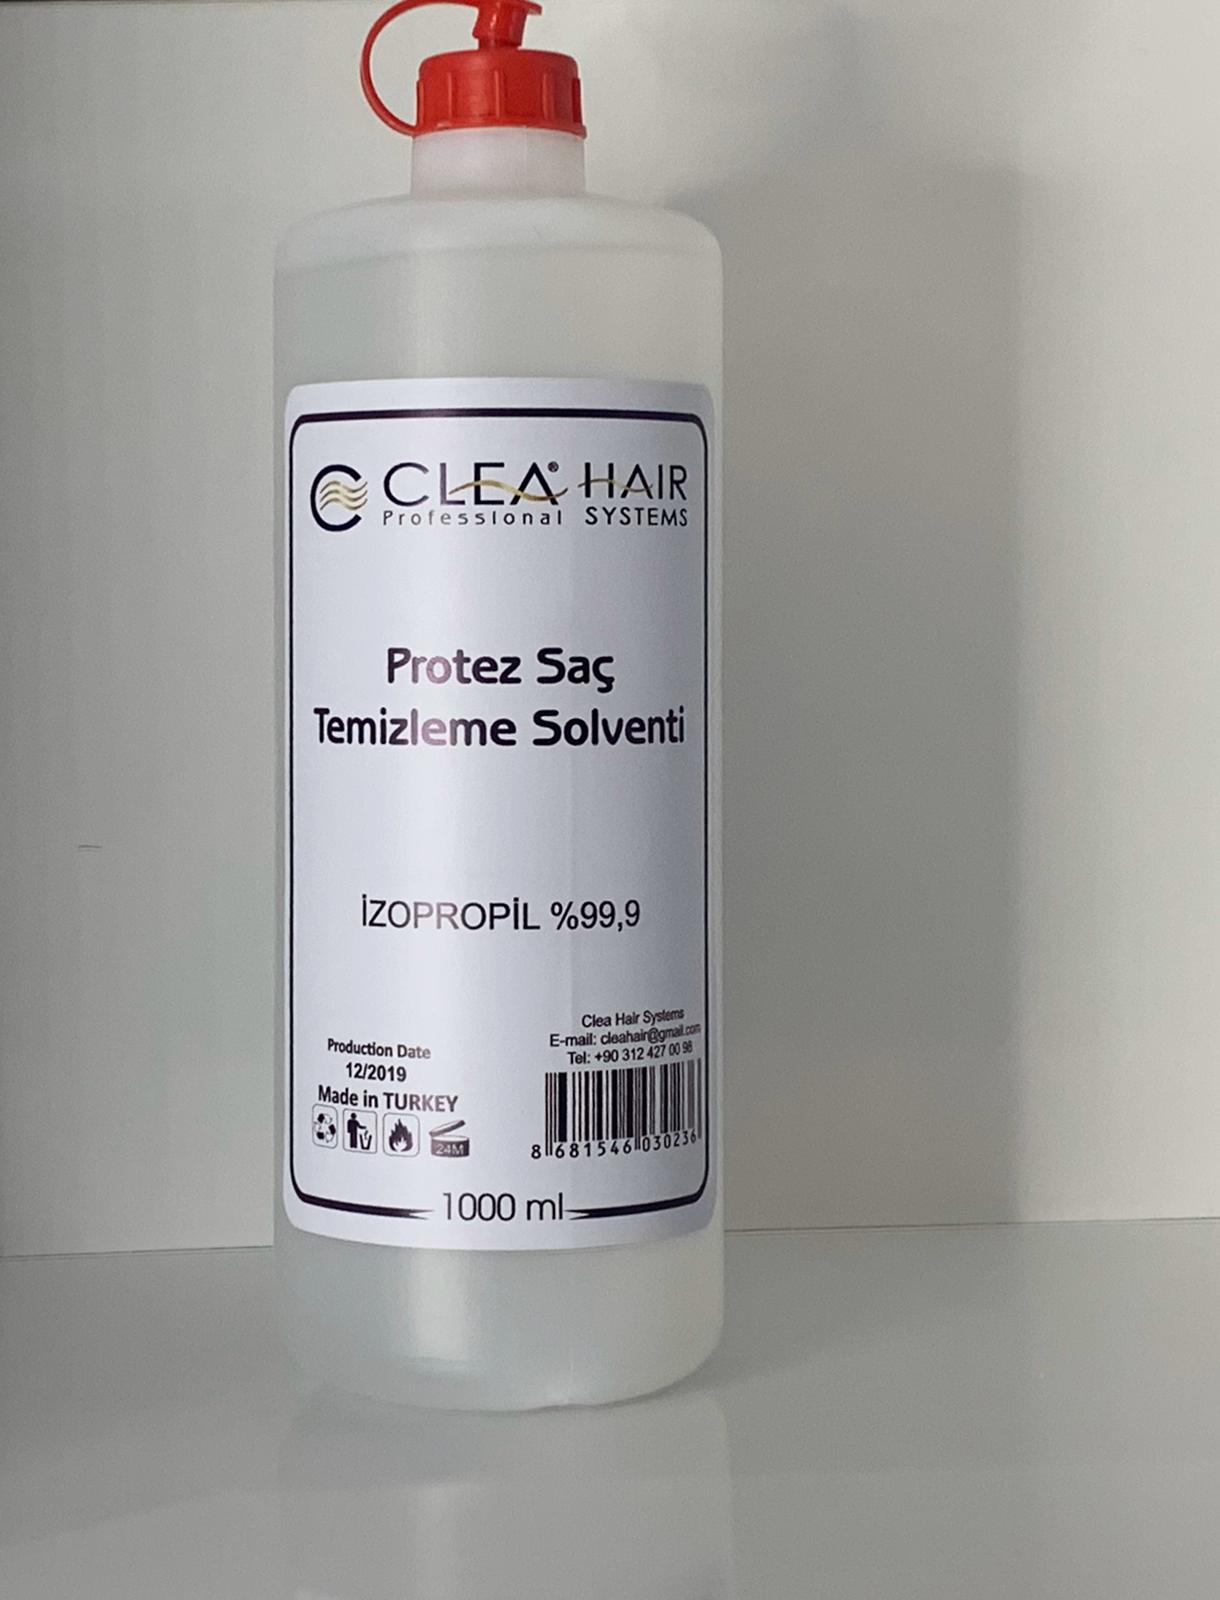 Clea Hair Systems Protez Saç Bant Sökücü Solvent 1 Lt